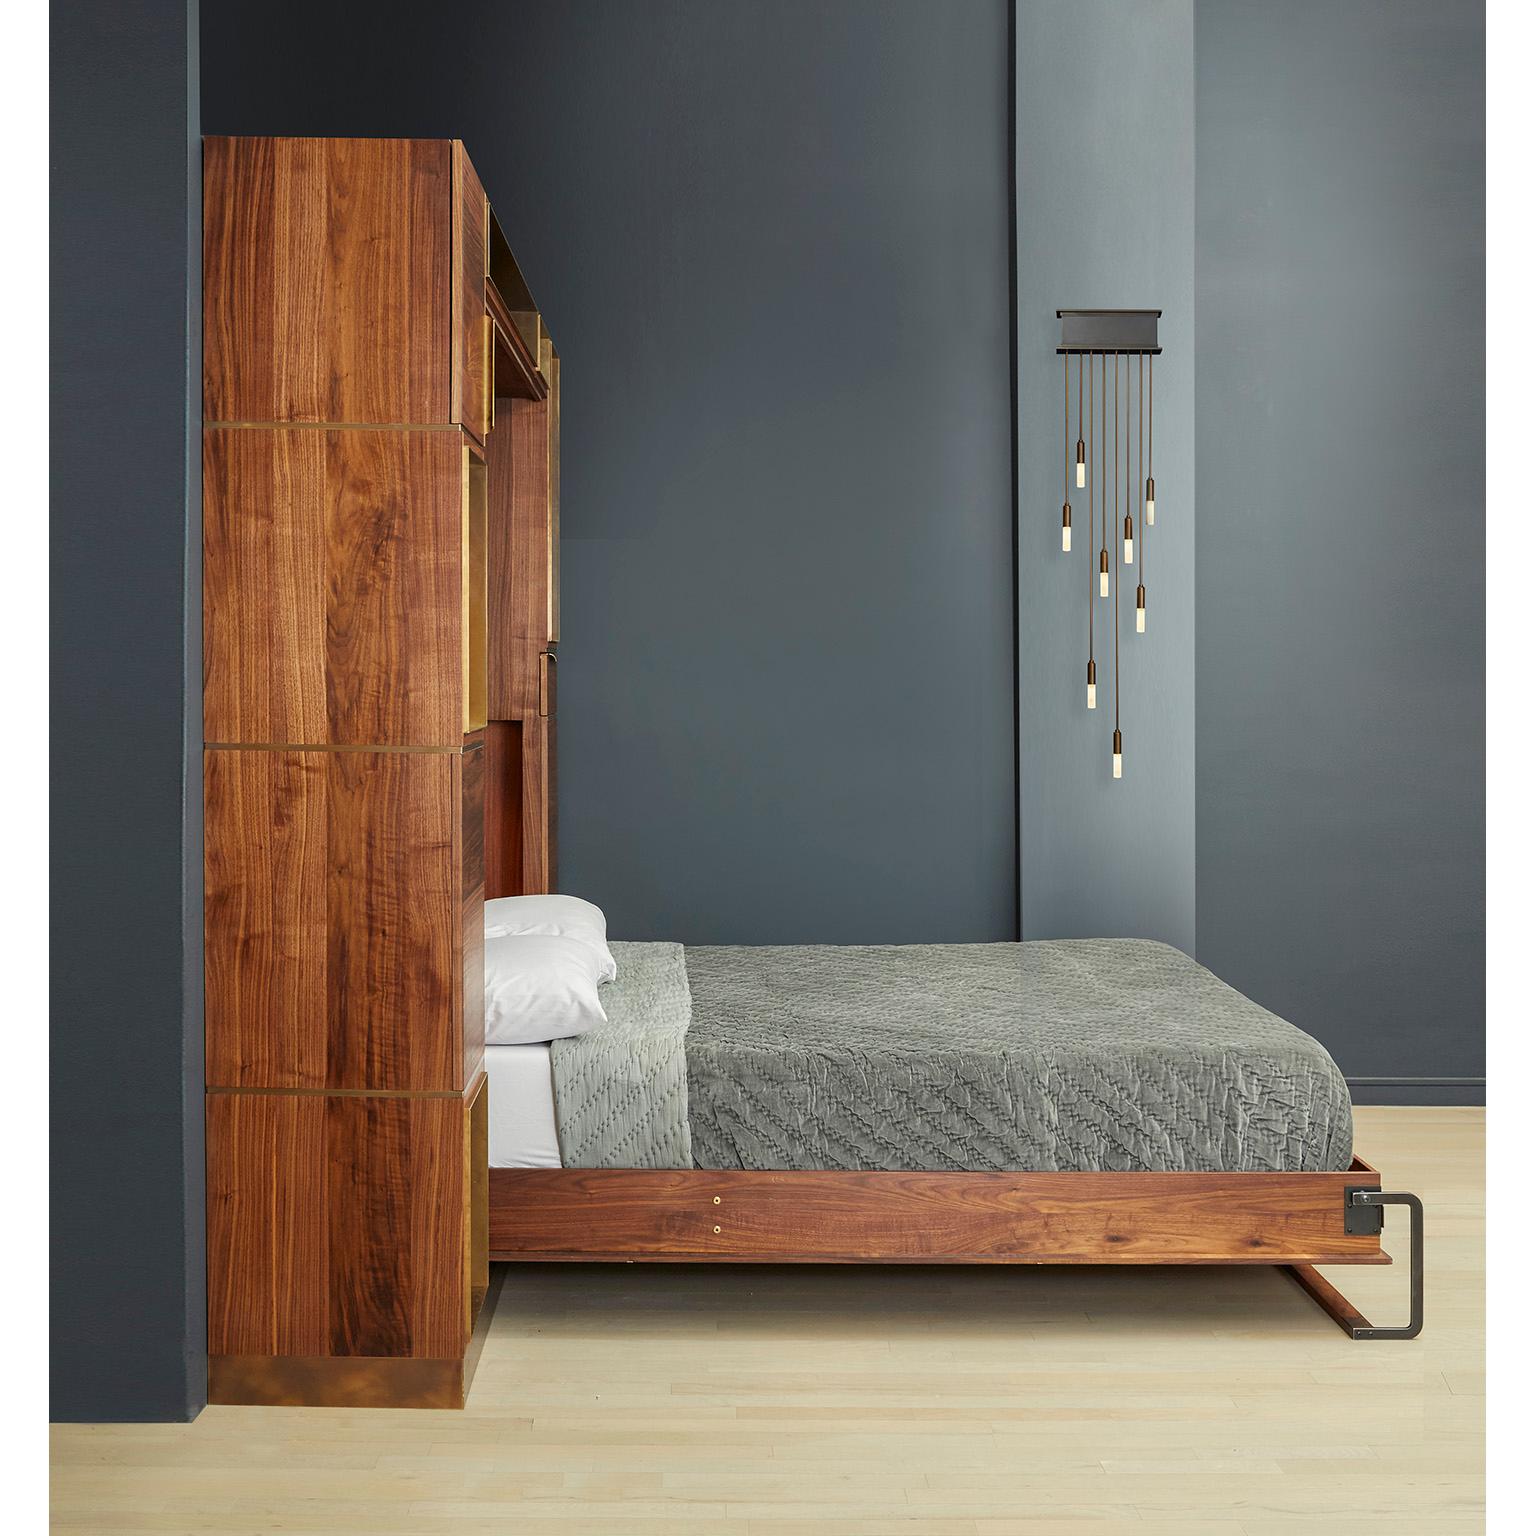 Das Bett von Amuneal, das sich wie ein eingebautes Möbelstück anfühlt, verbirgt eine Queensize-Matratze hinter Paneelen aus versilbertem Nussbaumholz mit Intarsien aus oxidierter Bronze. Bei geschlossenem Bett schaffen die Nussbaum- und